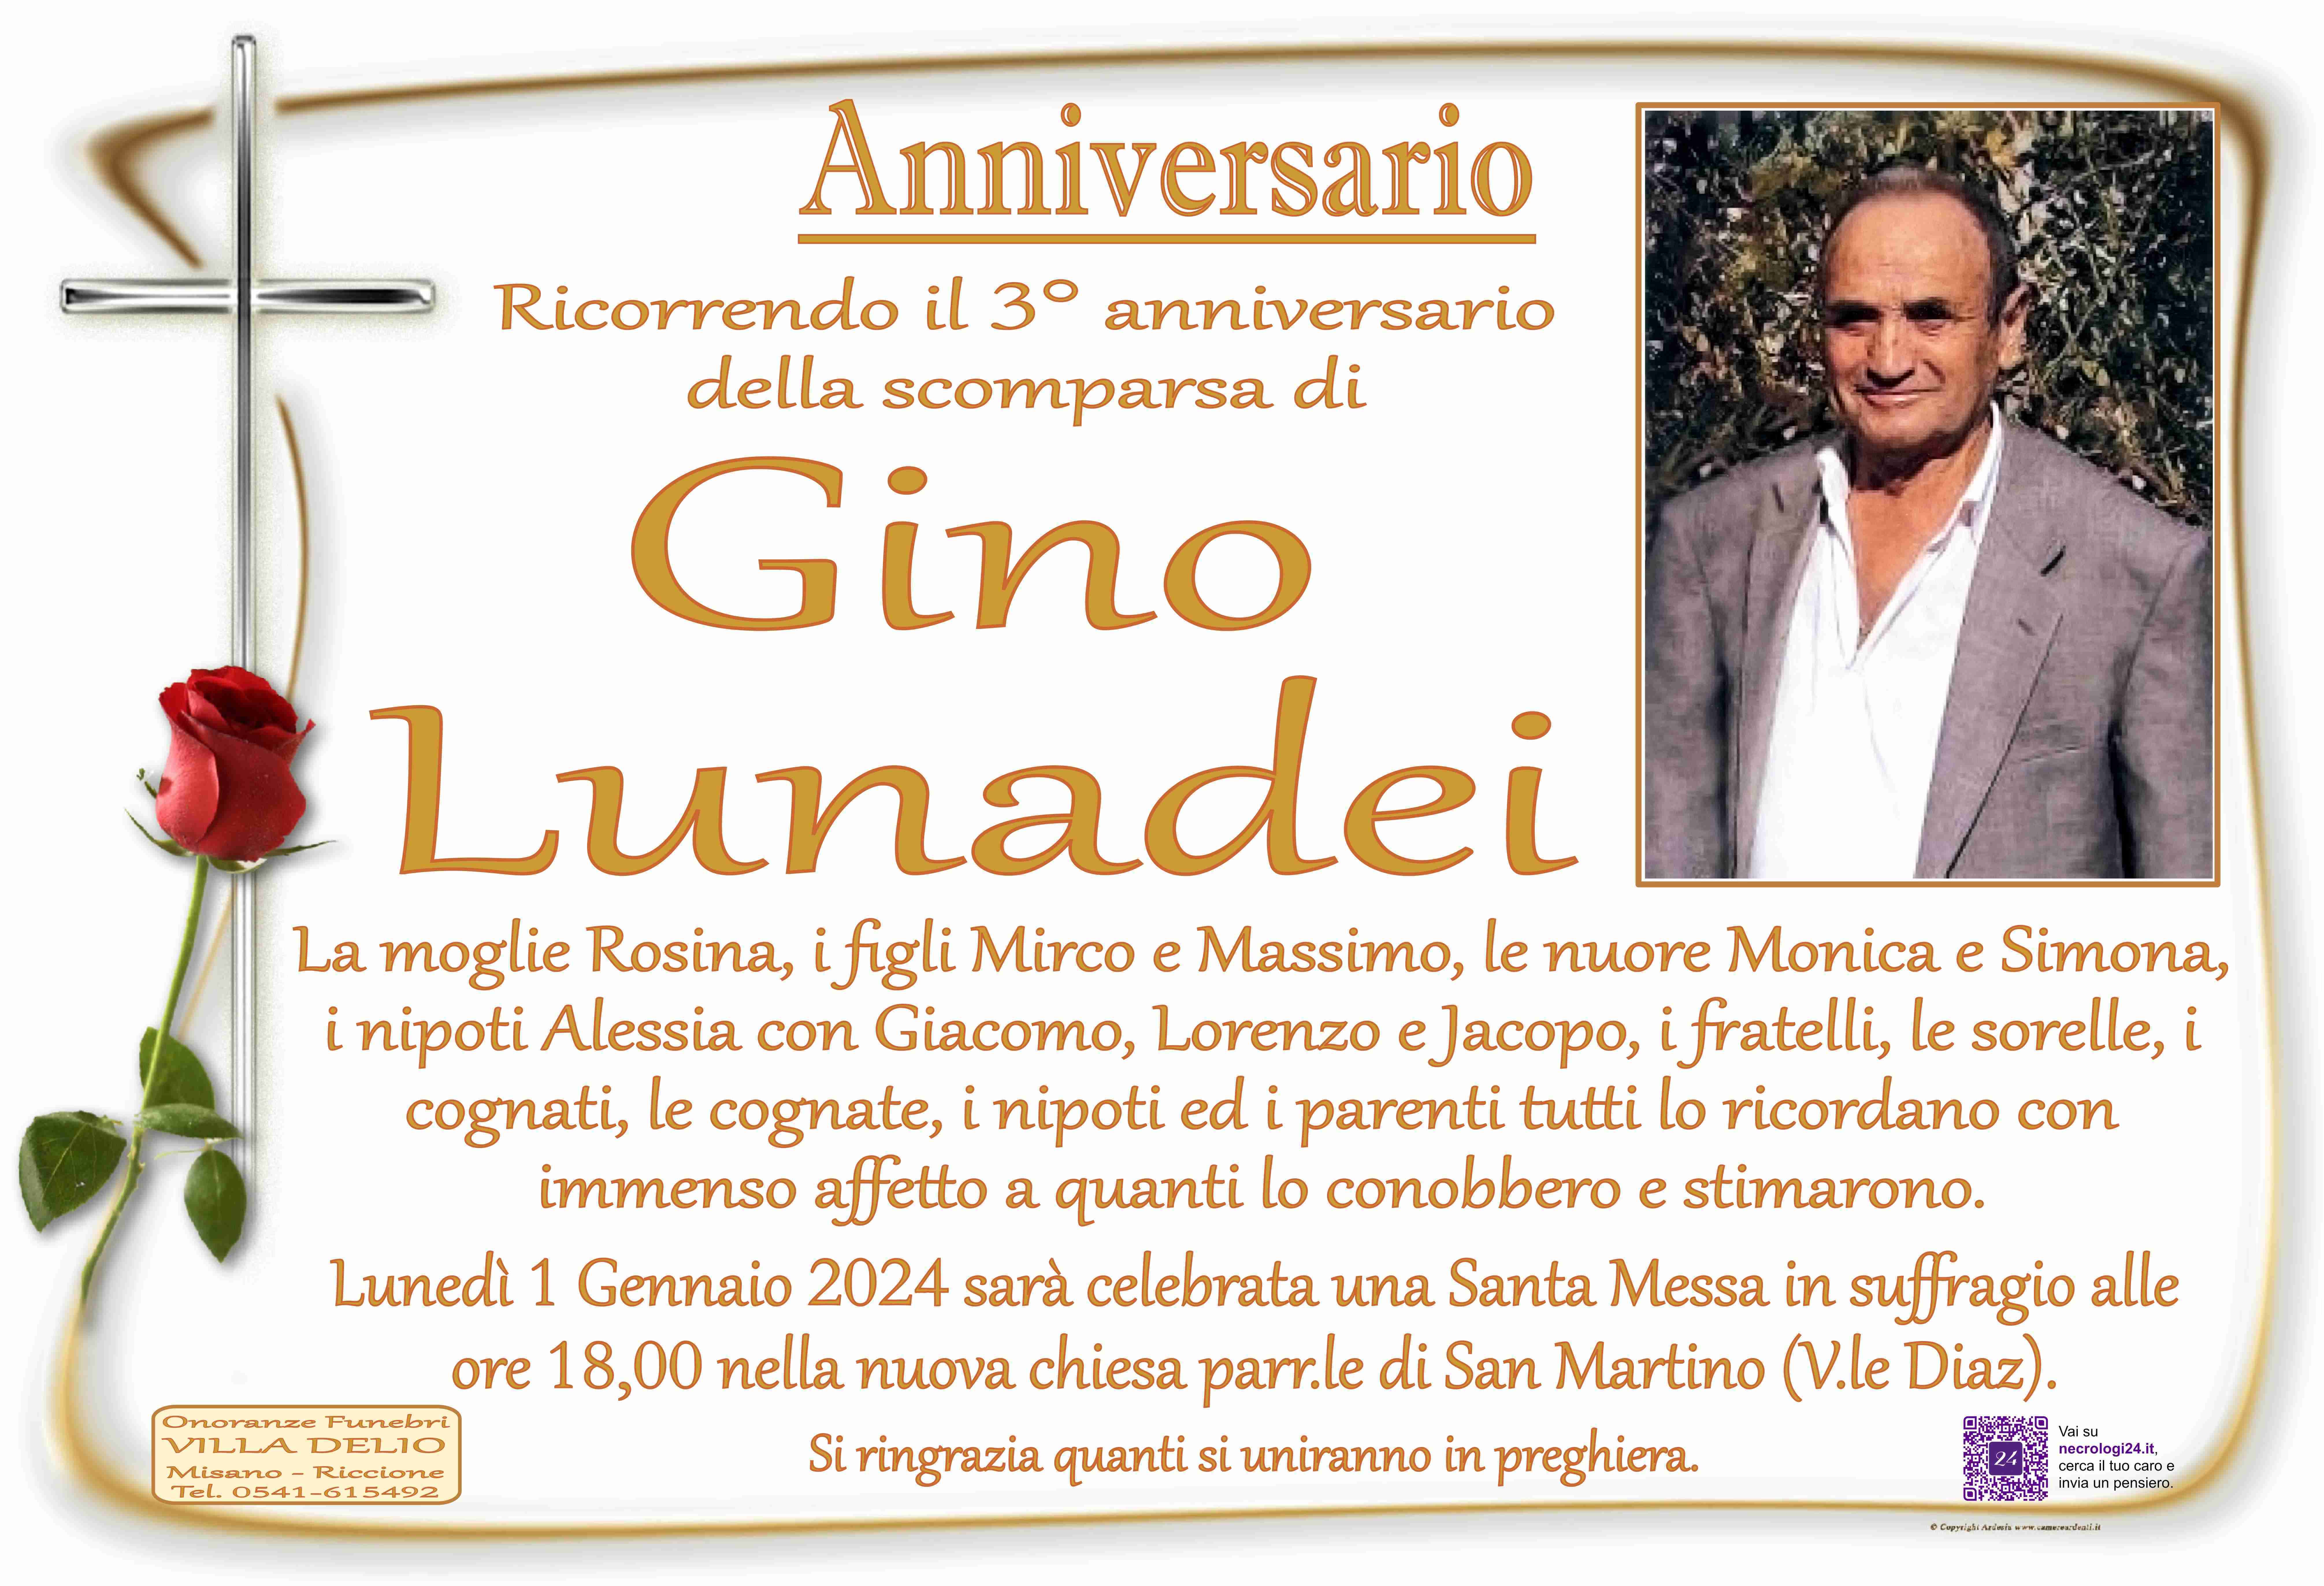 Gino Lunadei